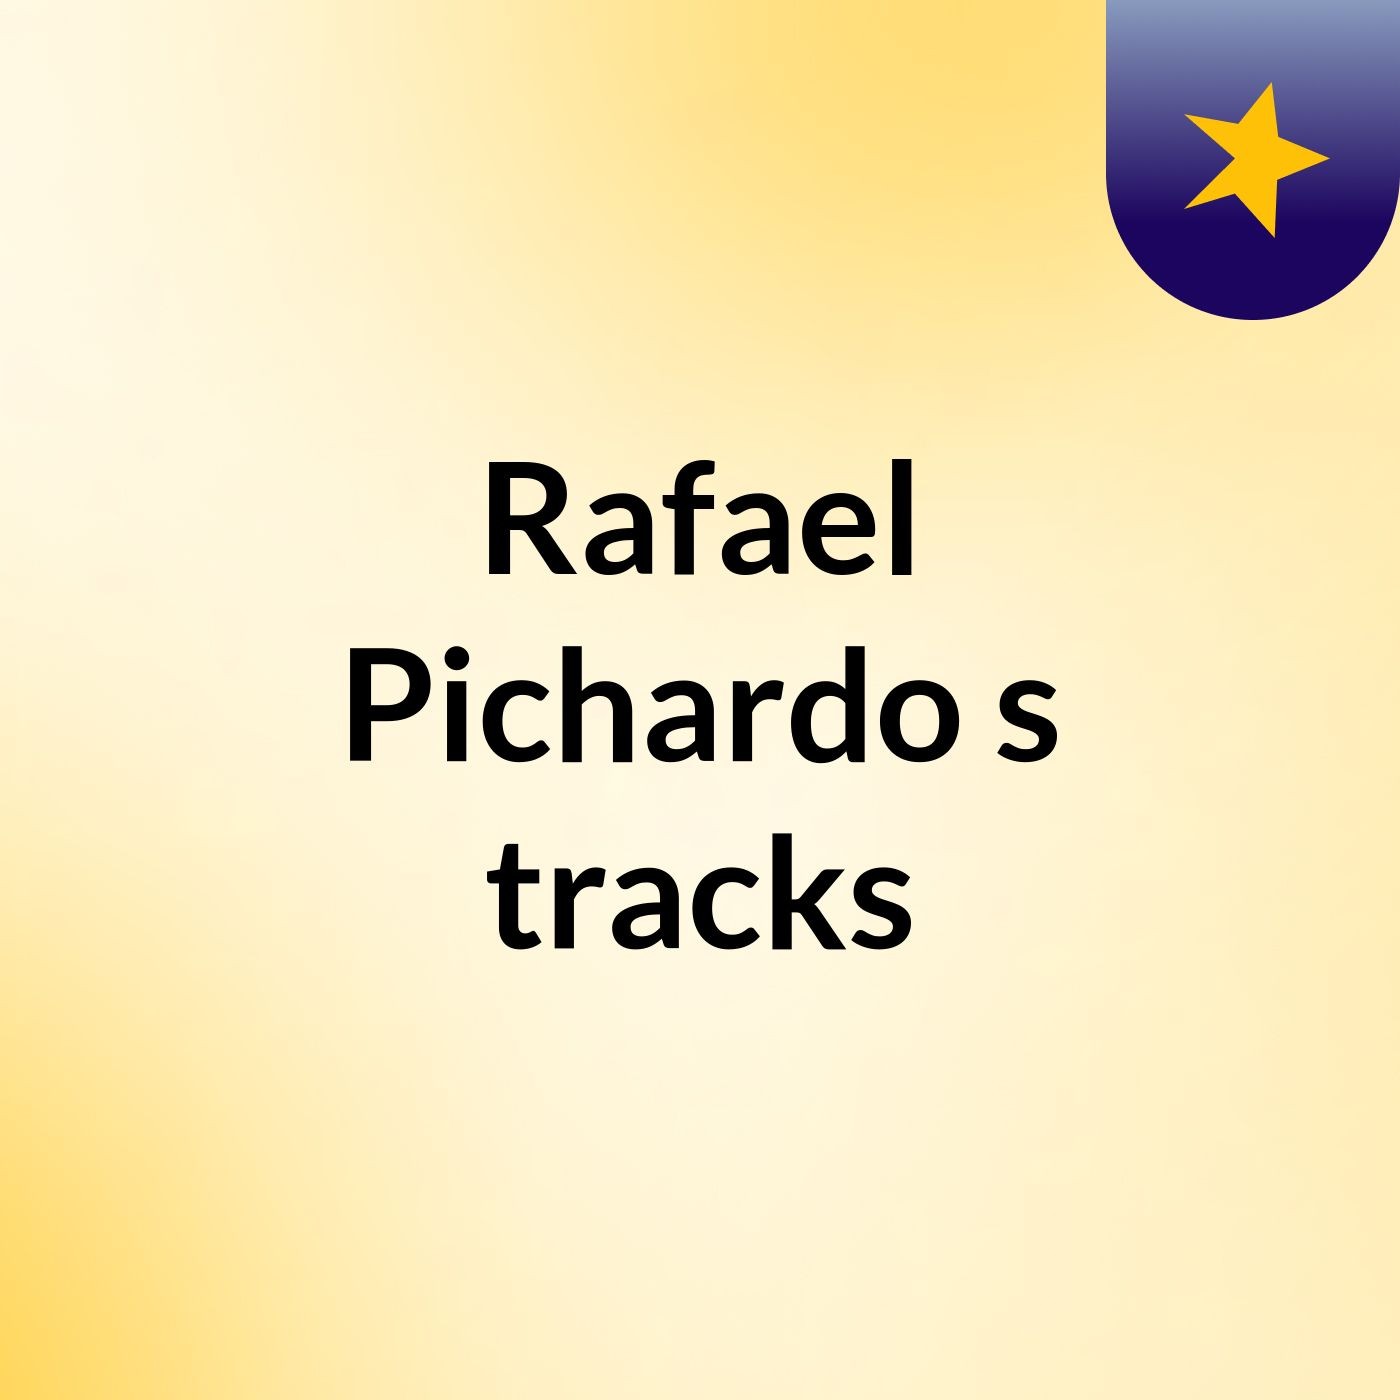 Rafael Pichardo's tracks